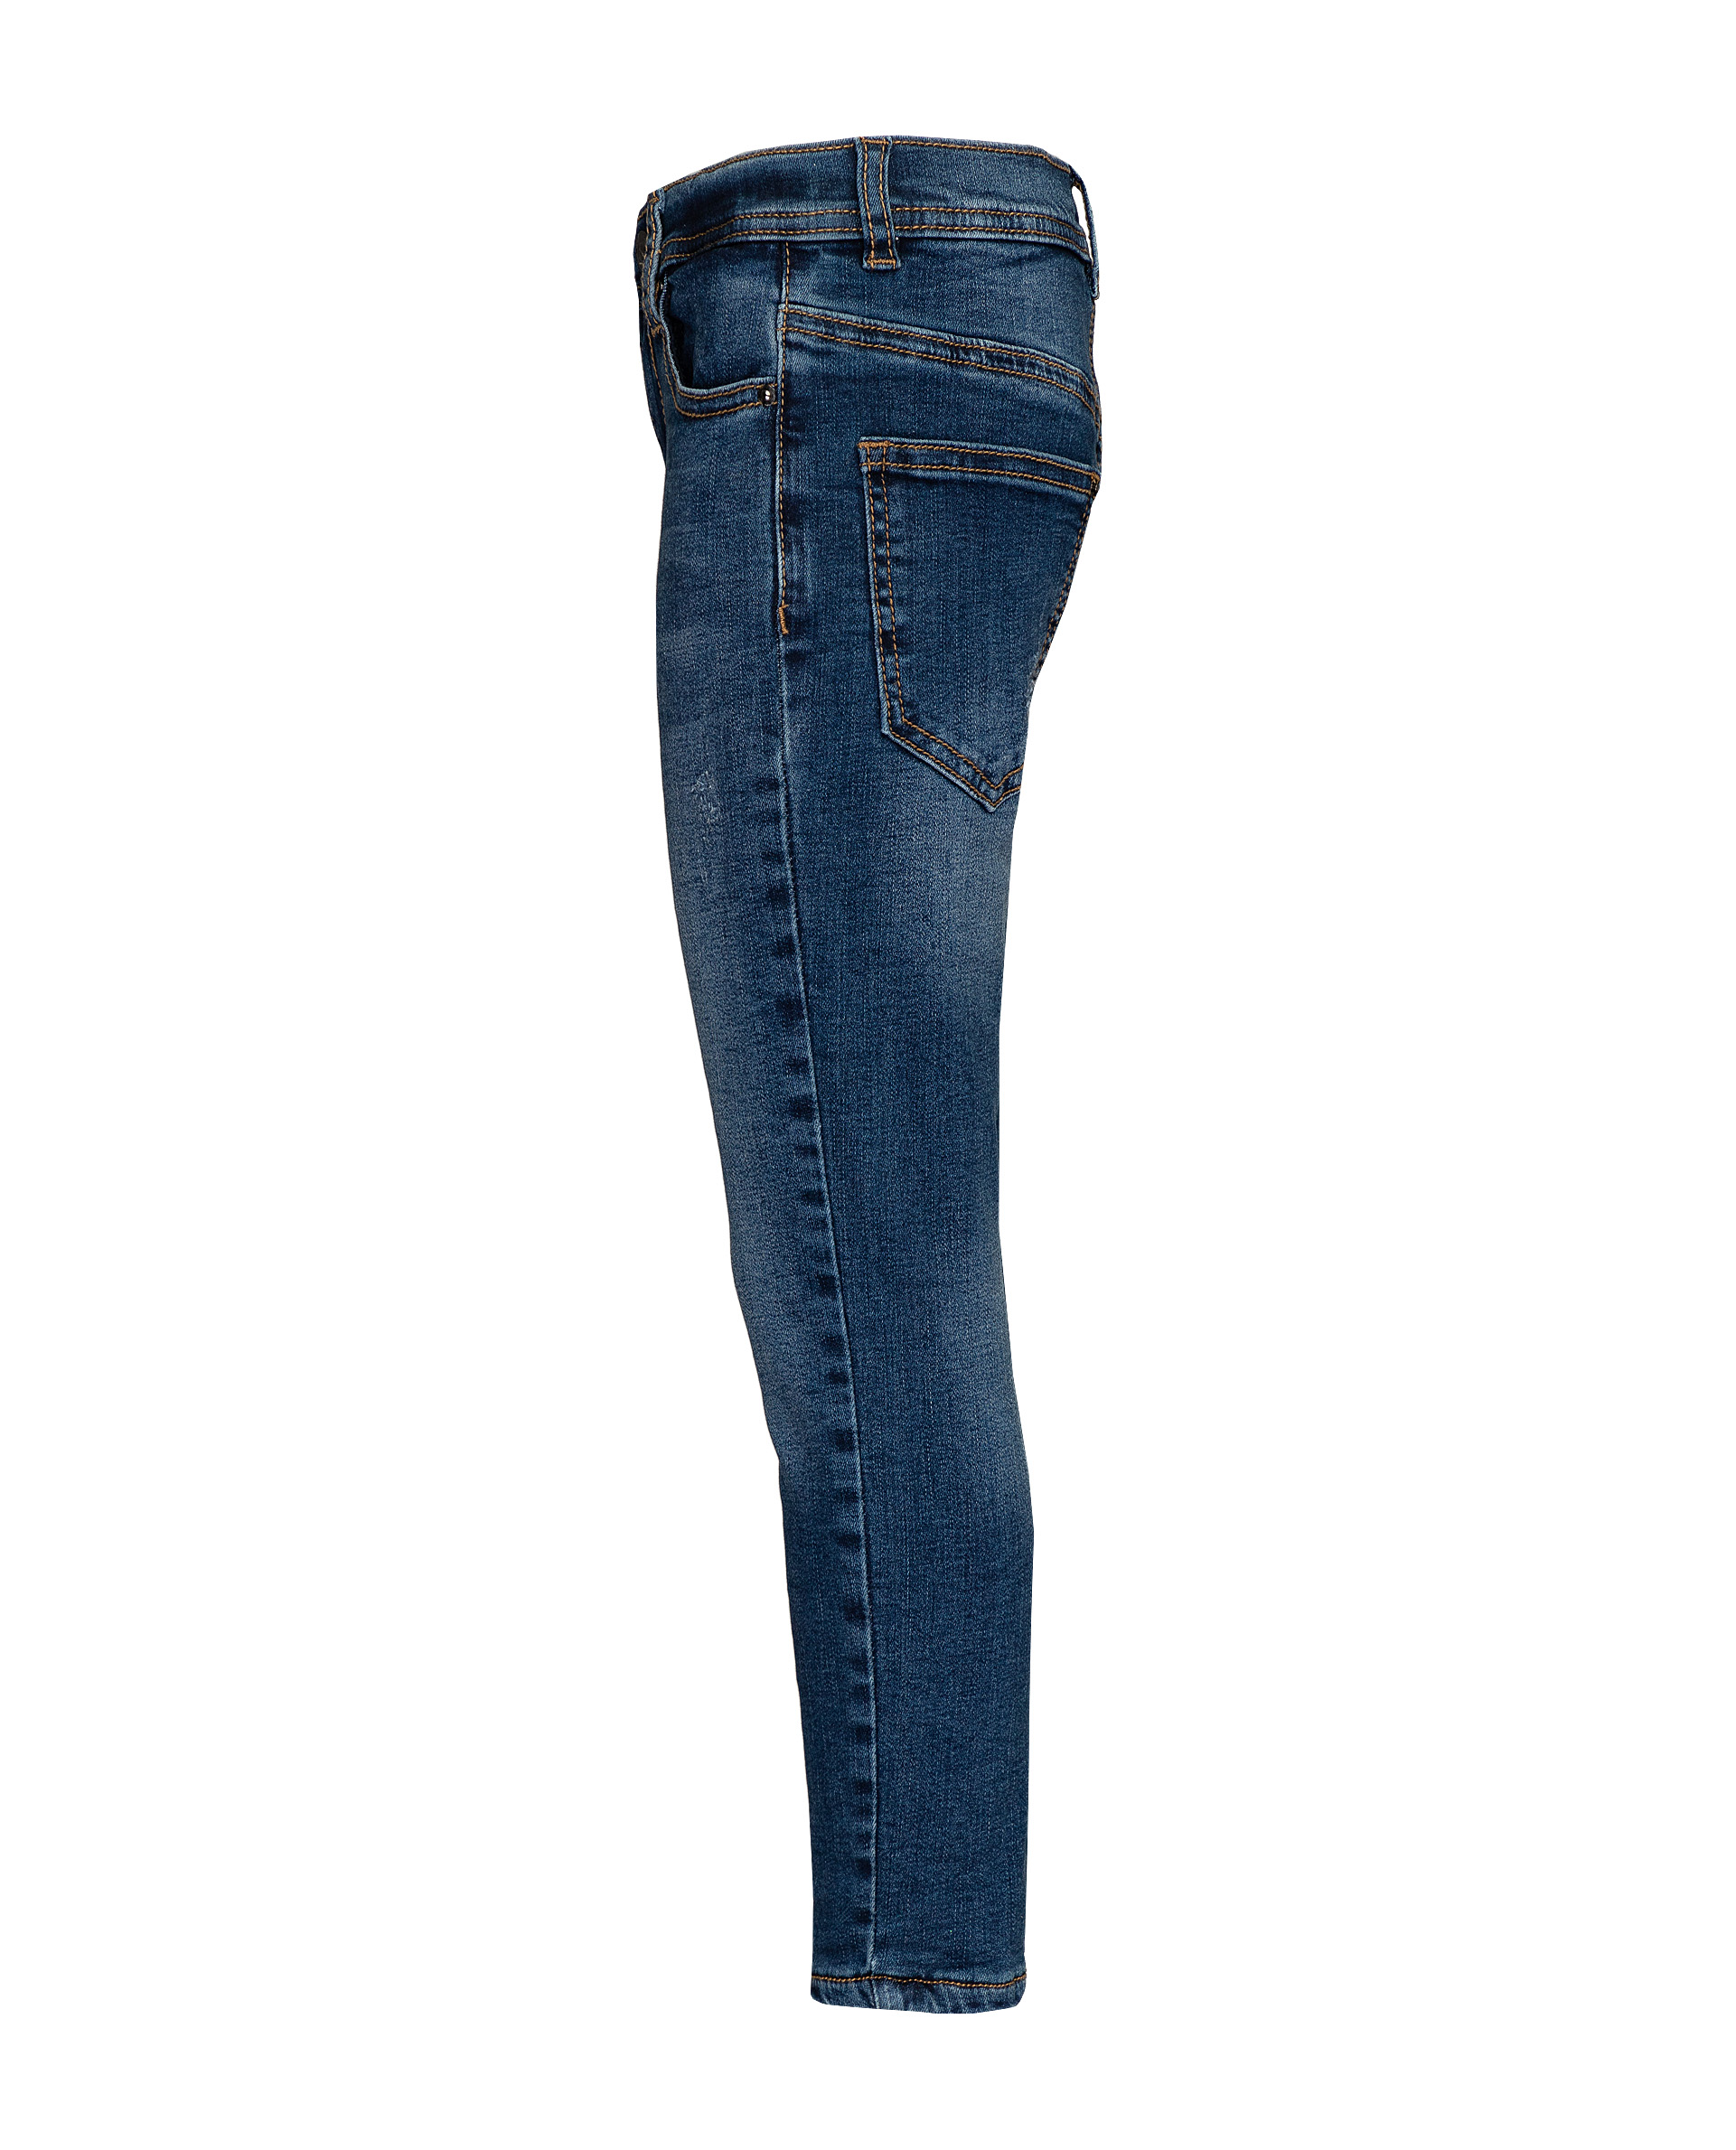 Синие утепленные джинсы Gulliver 21906BMC6402, размер 98, цвет синий - фото 2